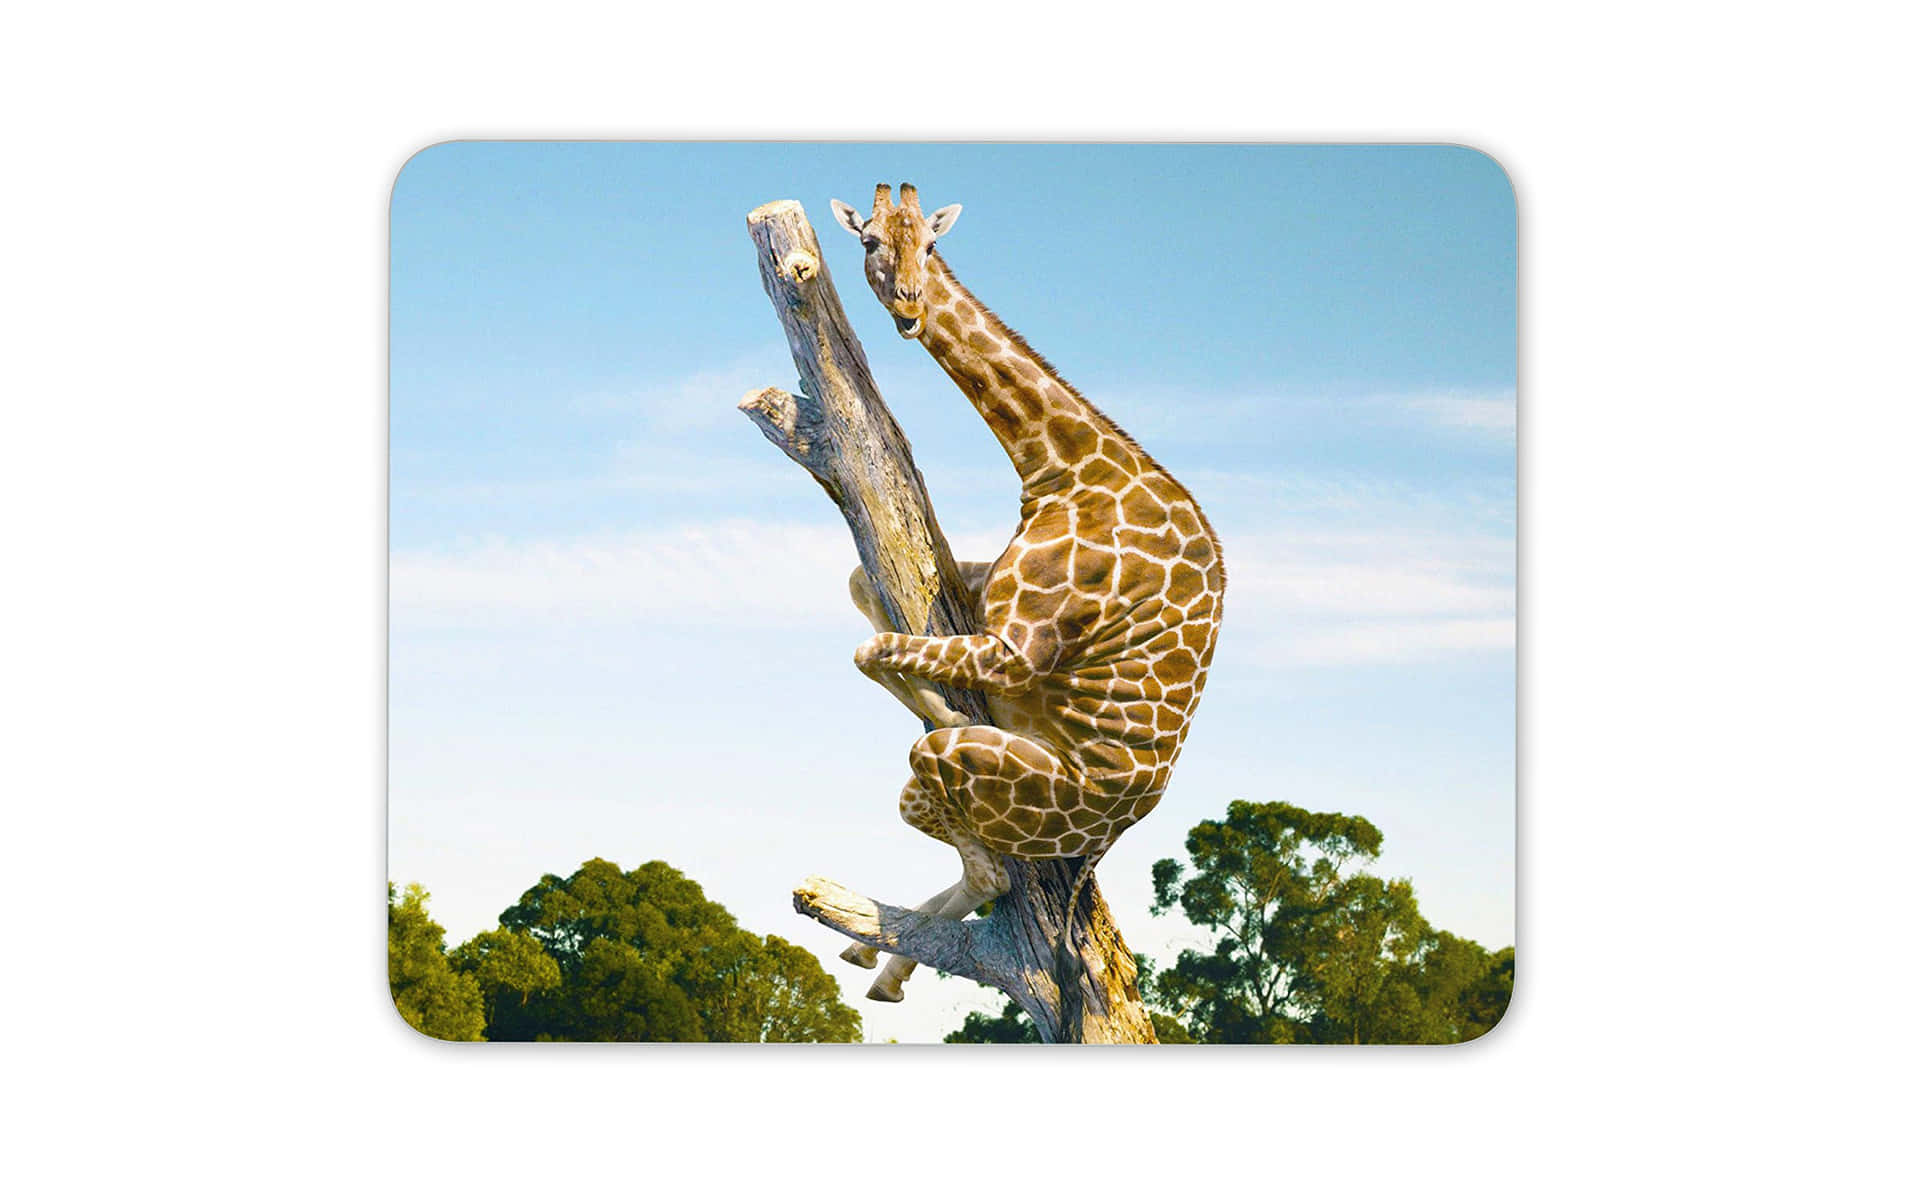 Imagemengraçada De Uma Girafa Escalando Uma Árvore.